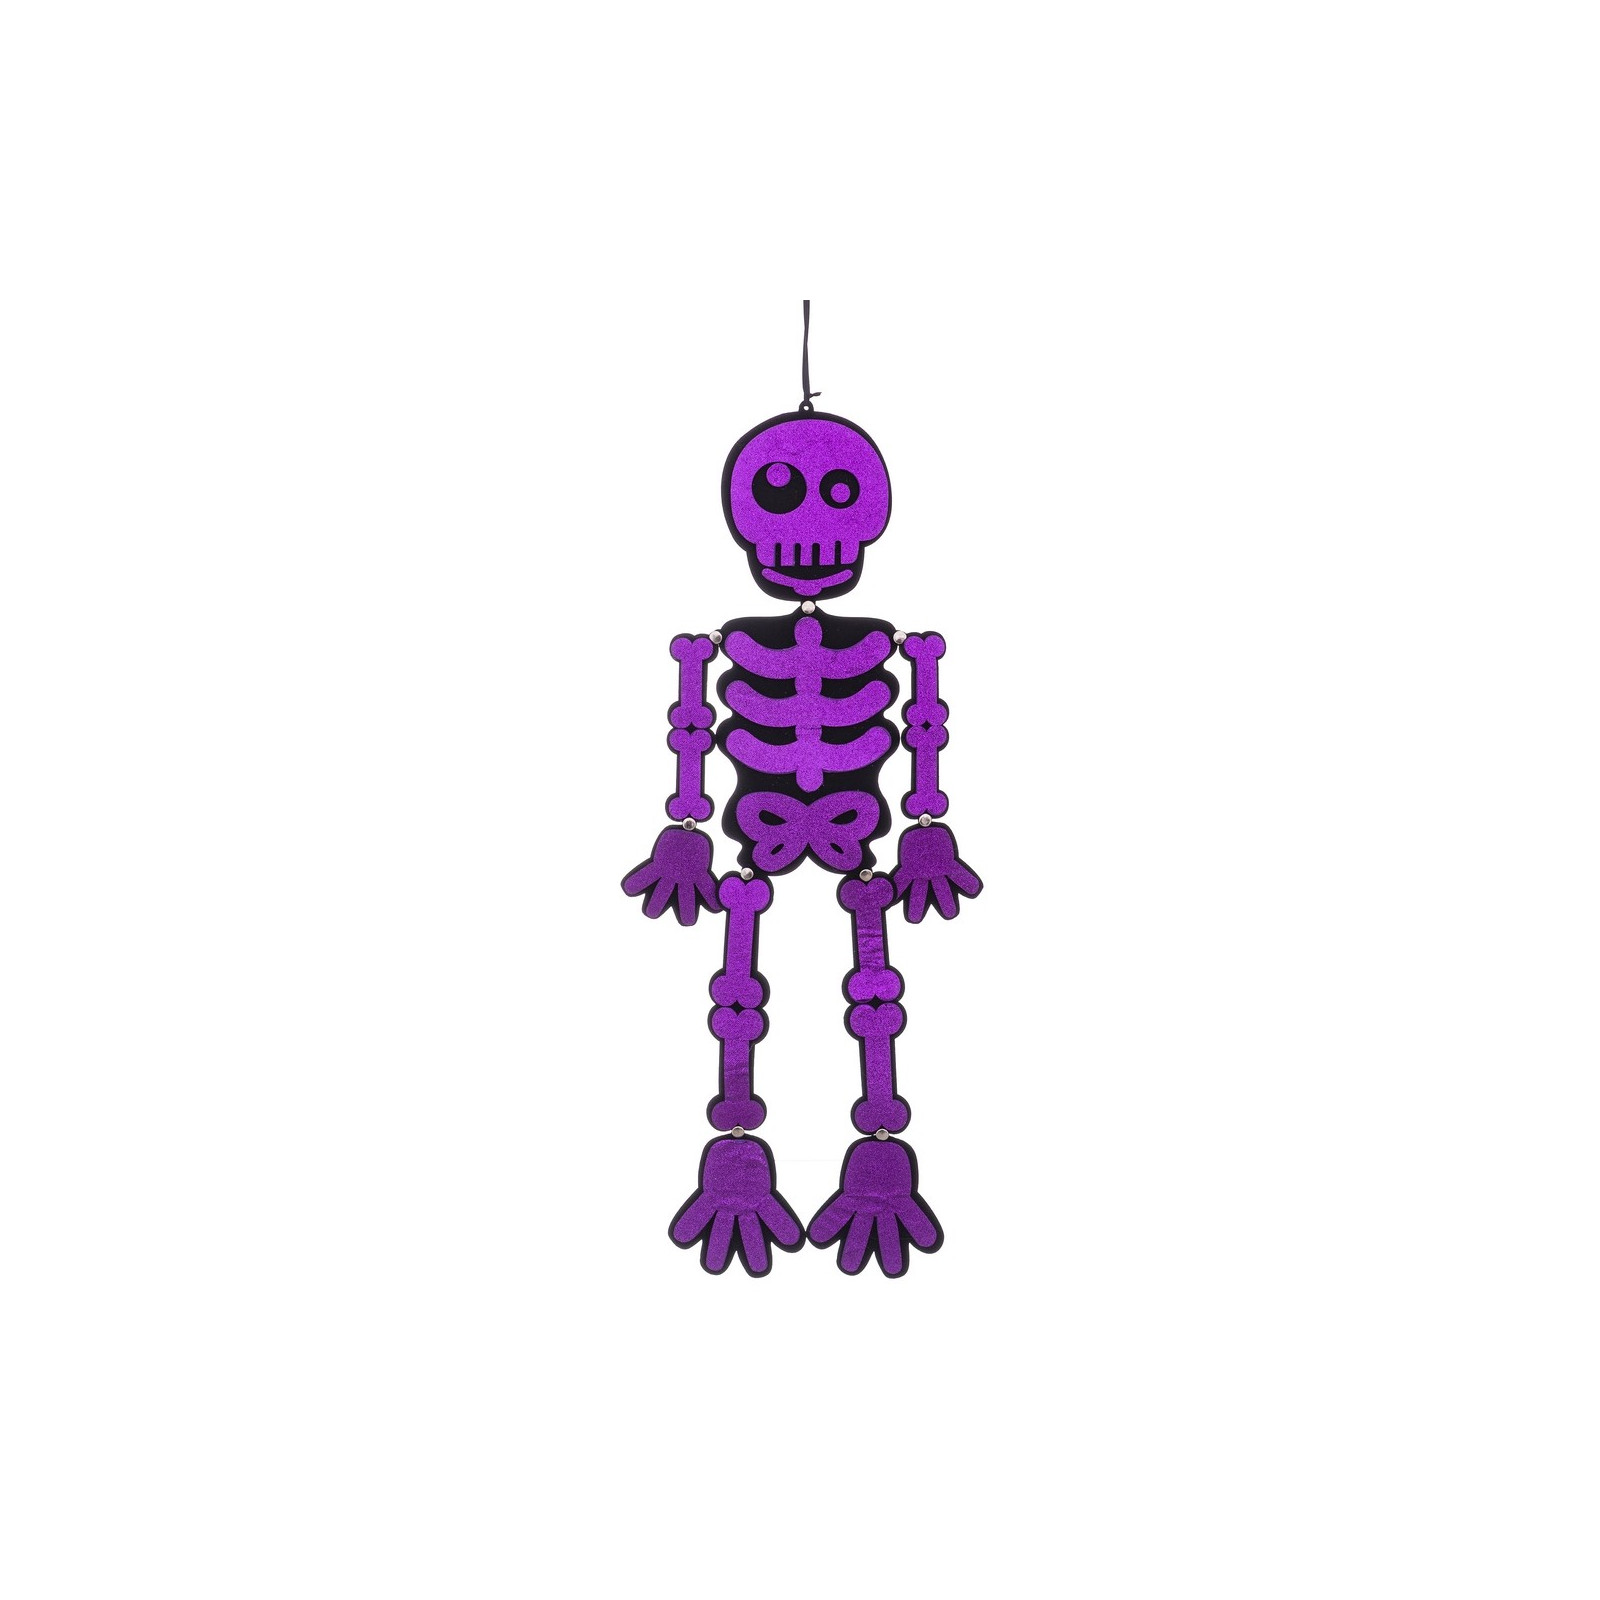 Esqueleto purpurina poliester morado 25 x 0 30 x 82 cm